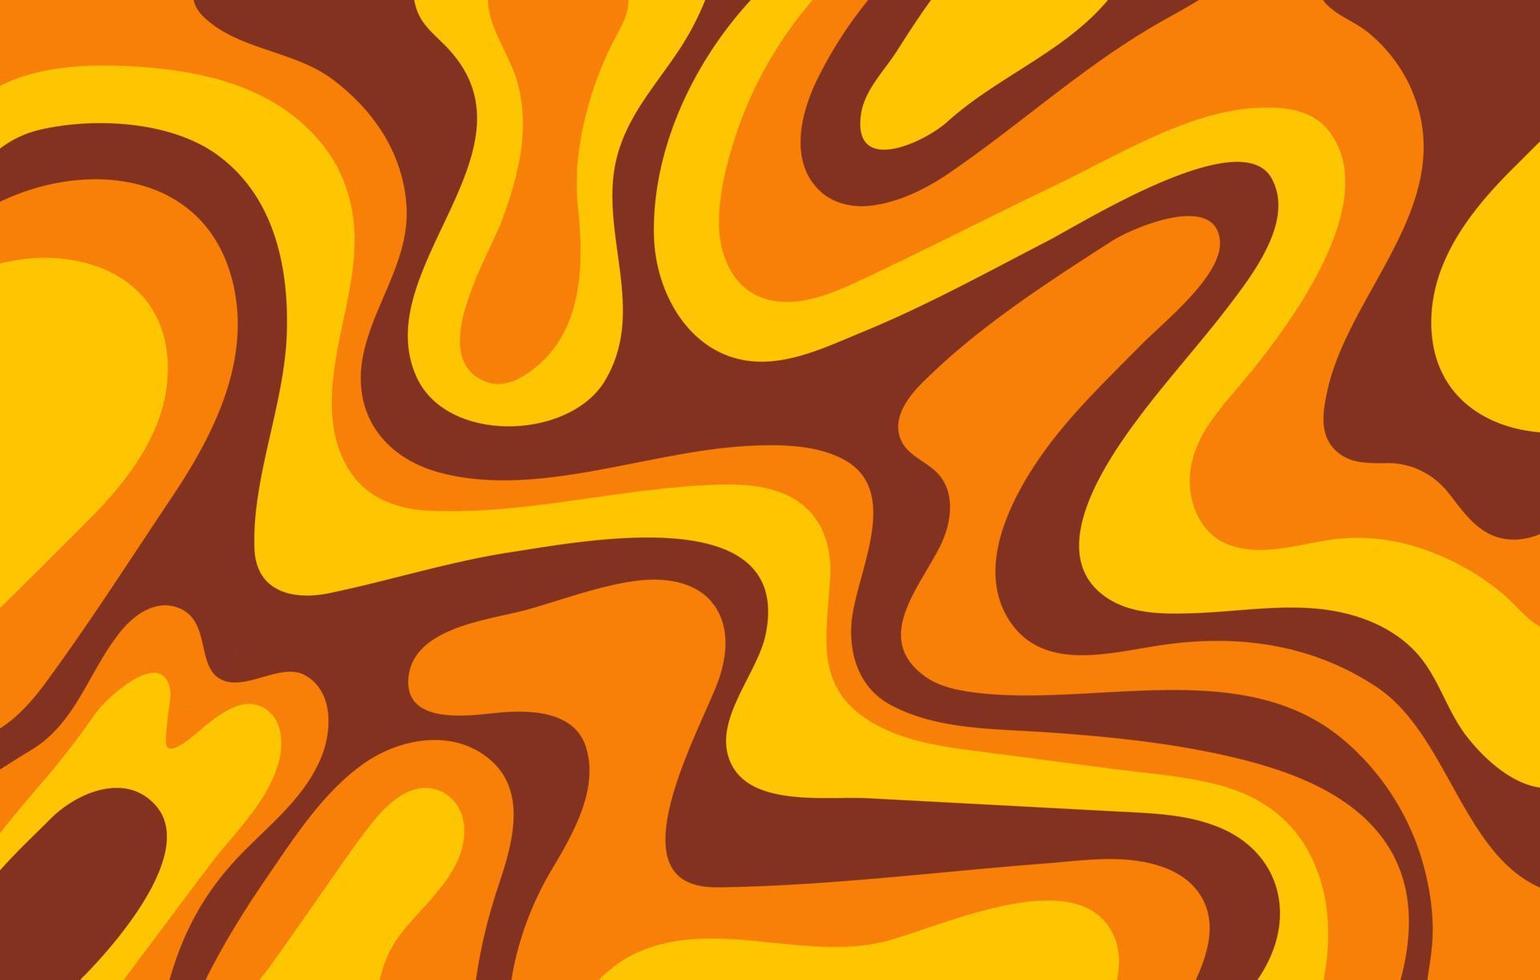 abstrato horizontal com ondas coloridas nas cores amarelas, laranja e marrons. ilustração vetorial na moda em estilo retrô dos anos 60, 70. vetor